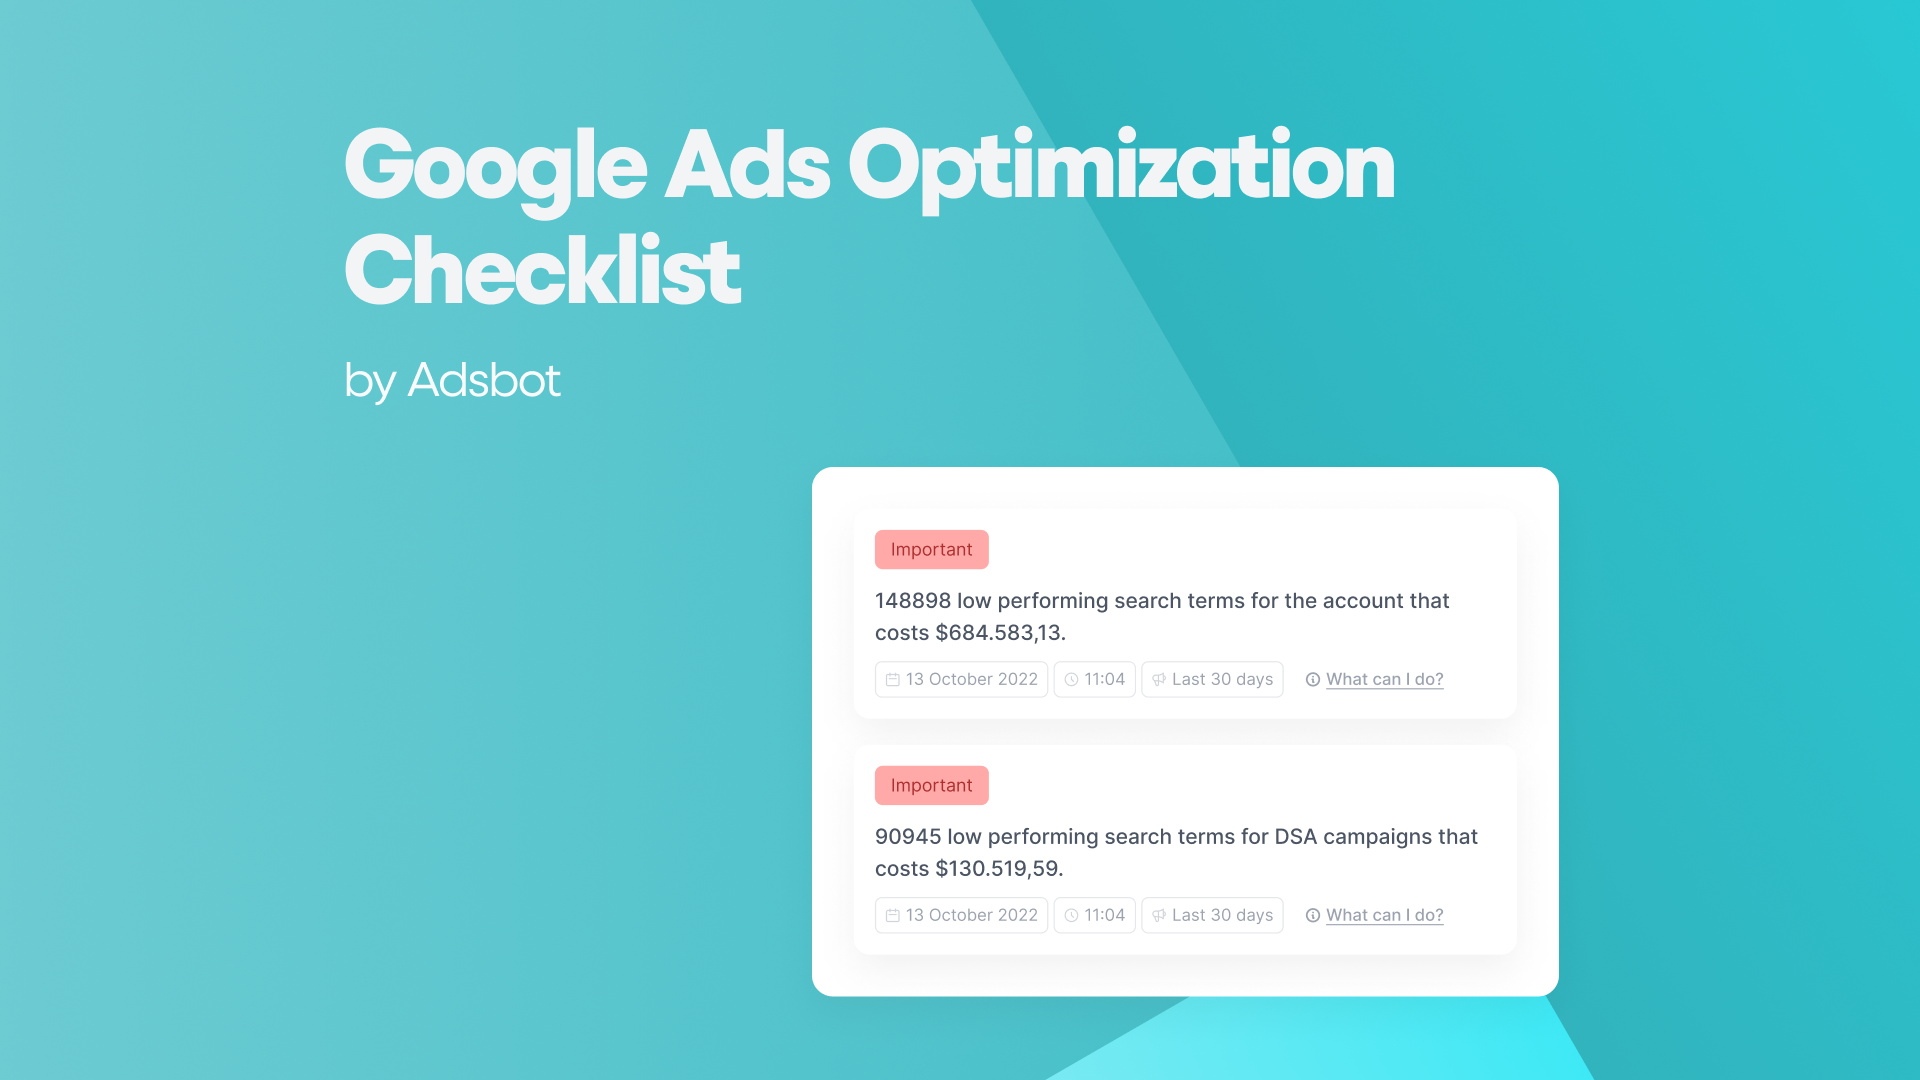 Google Ads Optimization Checklist